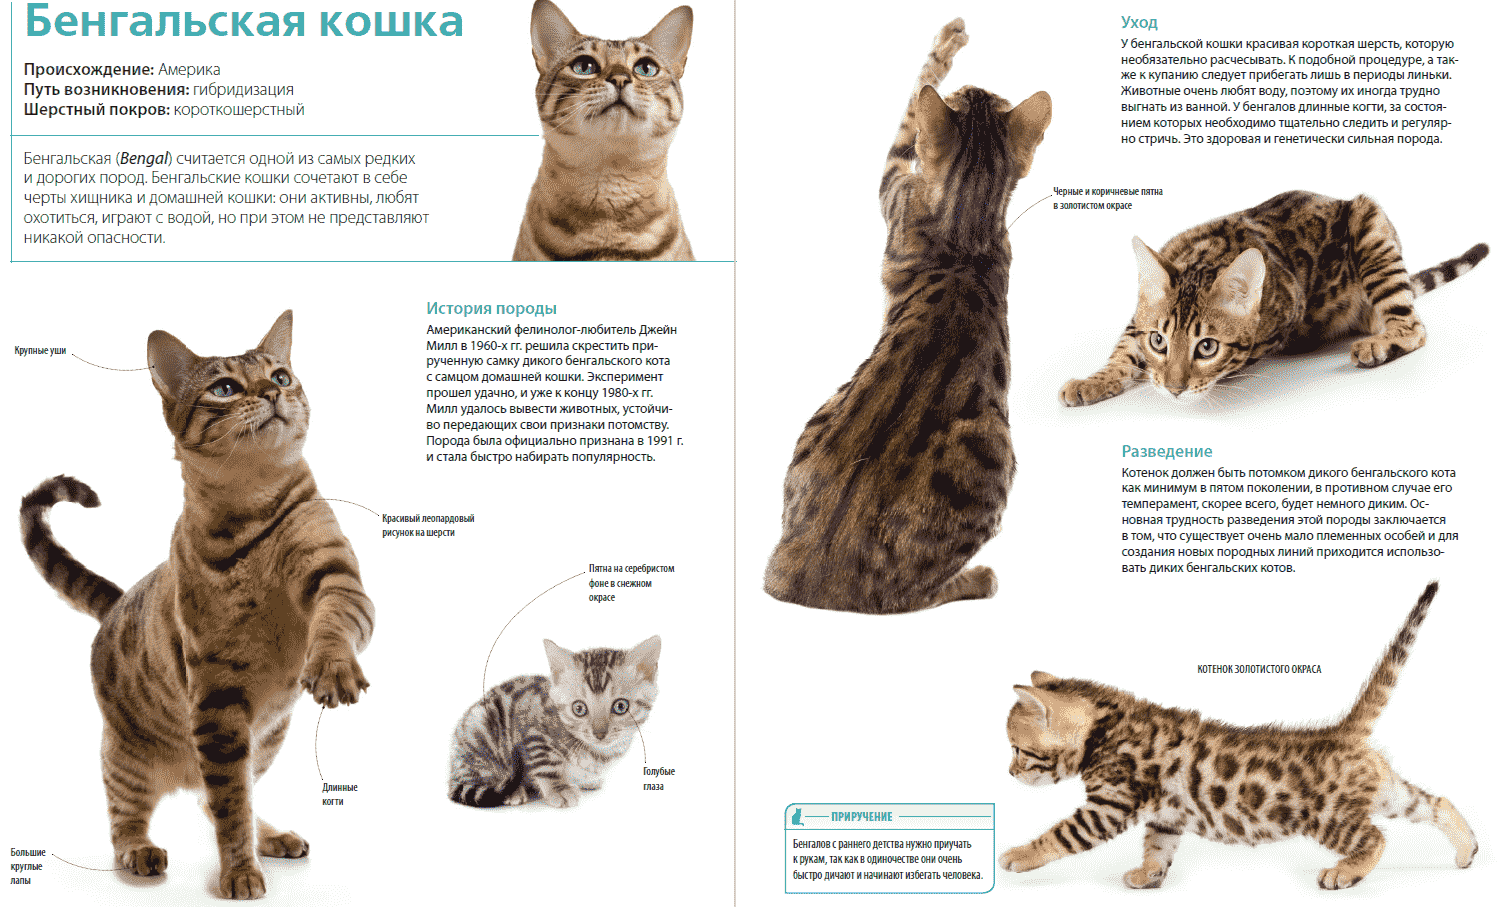 Породы кошек количество. Бенгальская кошка стандарты породы. Бенгальские коты вес по месяцам. Бенгальская кошка описание породы и характера. Кошка породы бенгал характеристика.